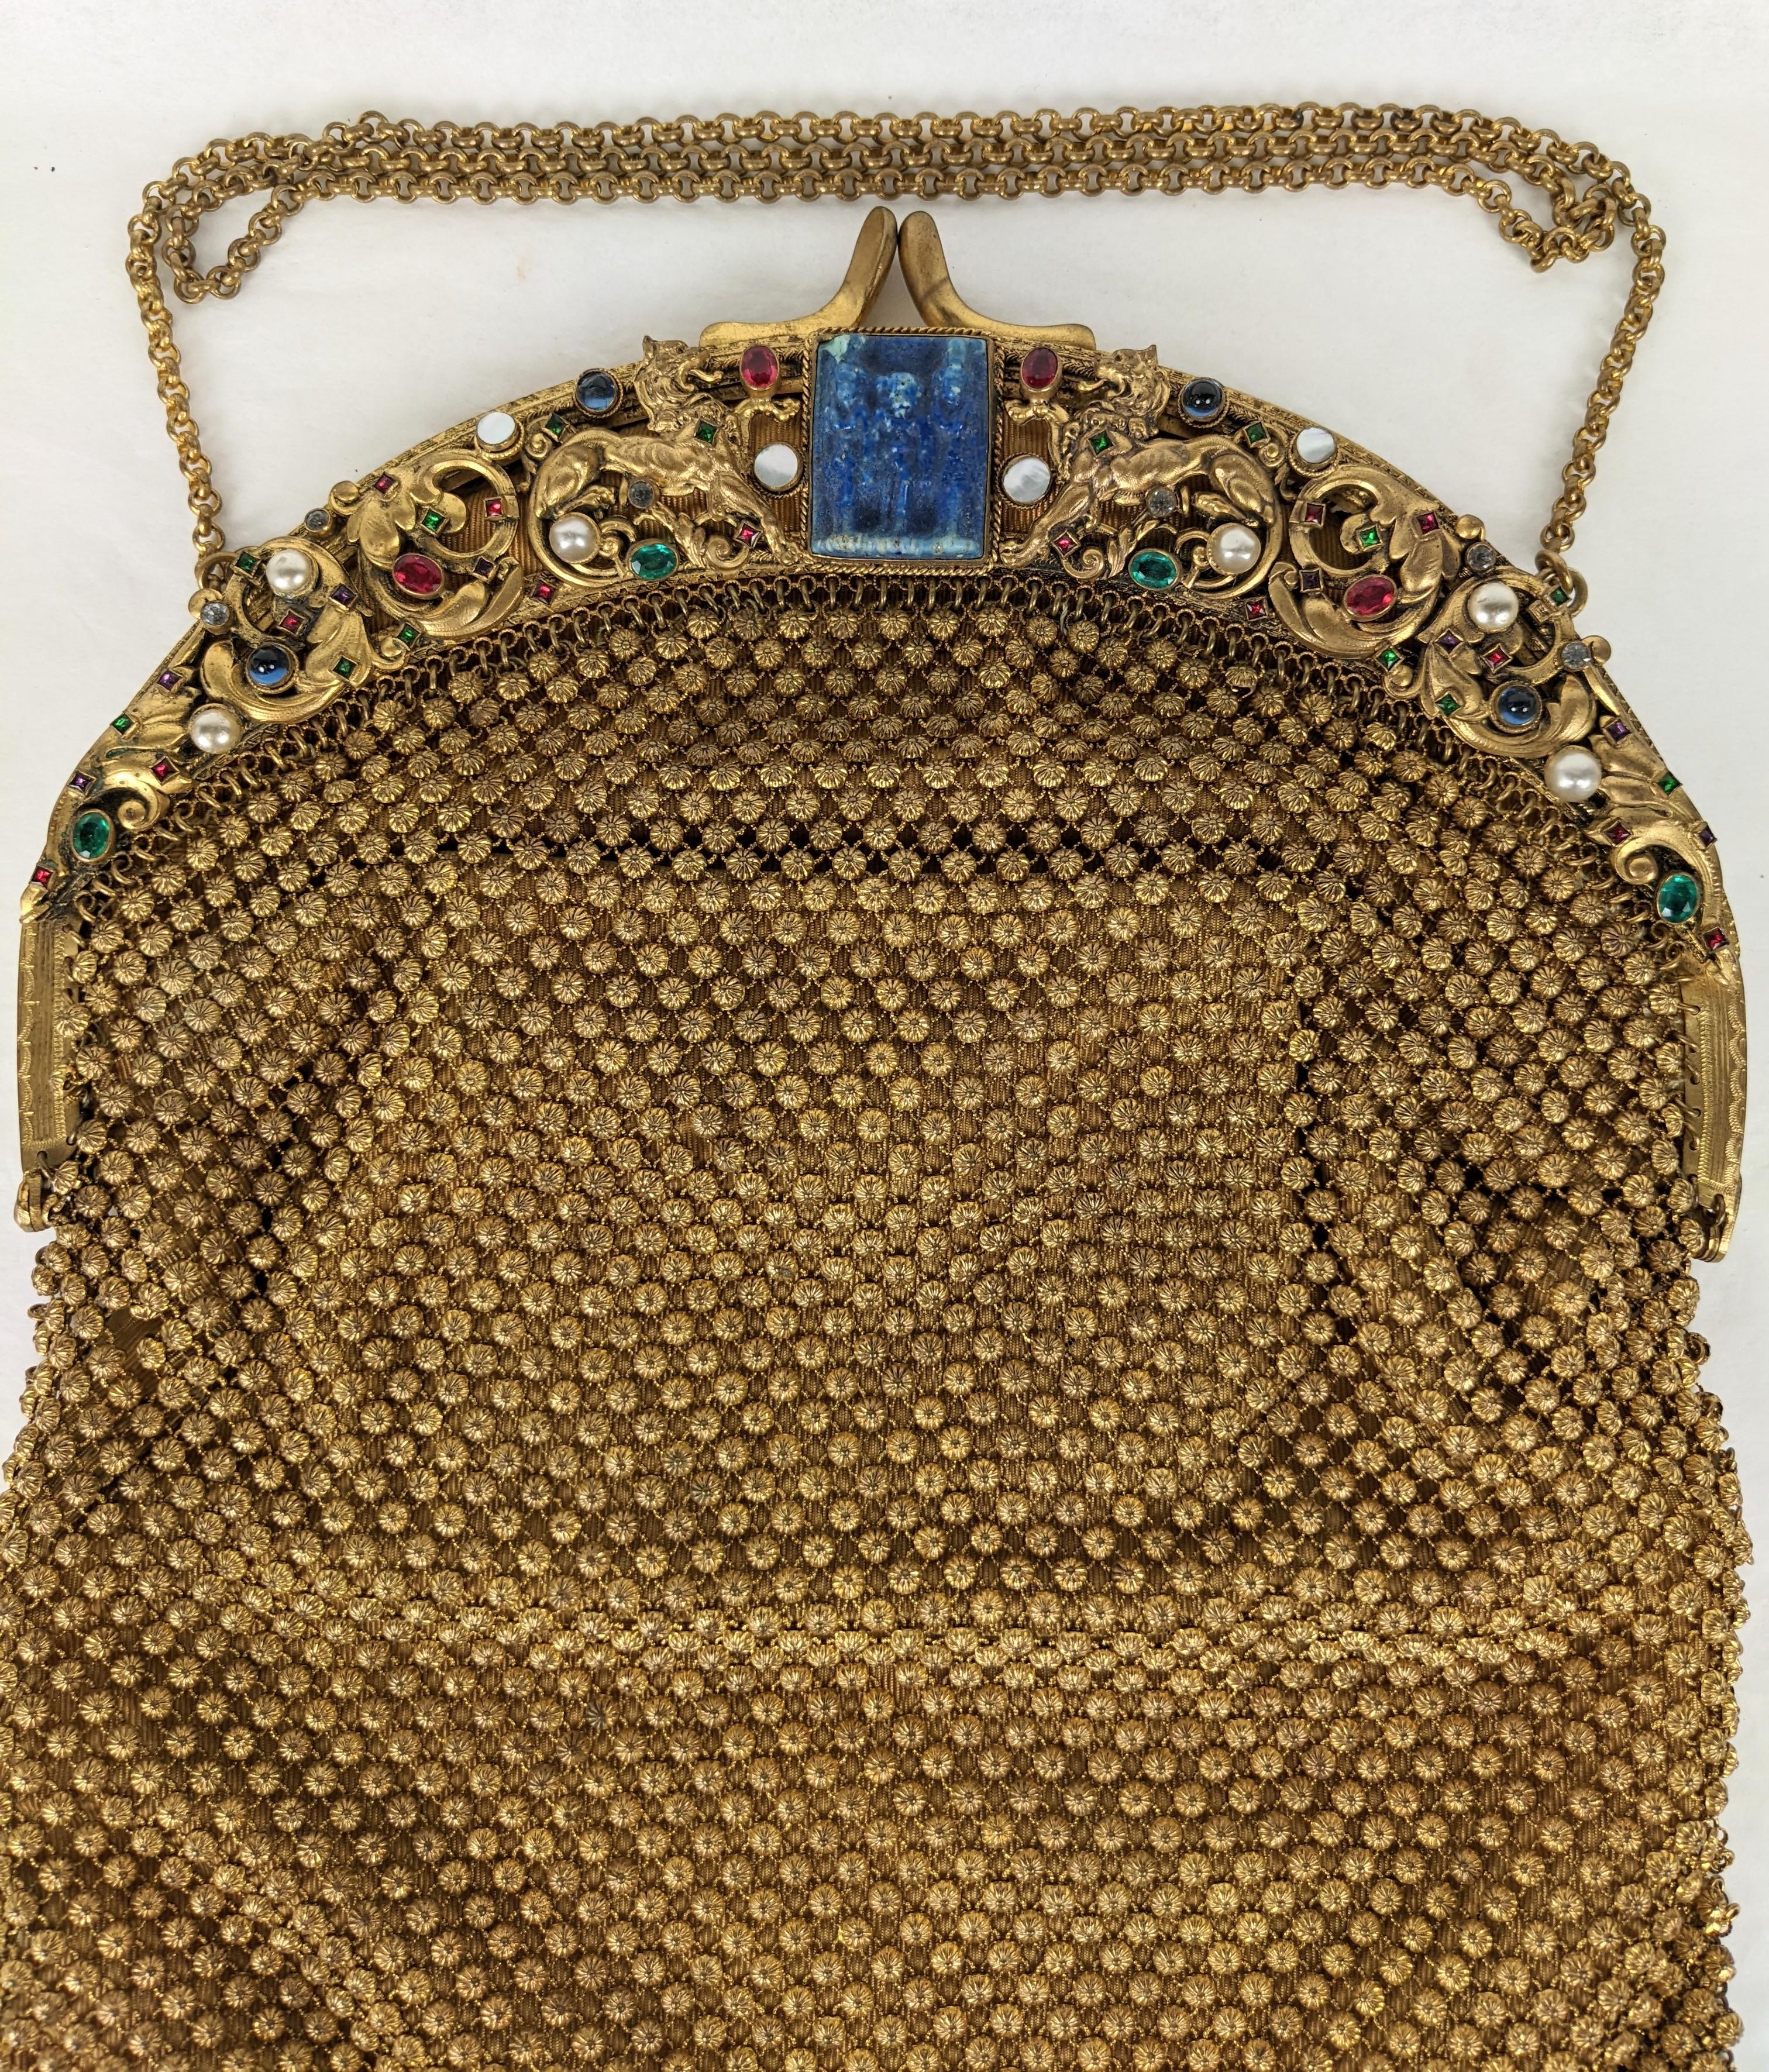 1920 handbags